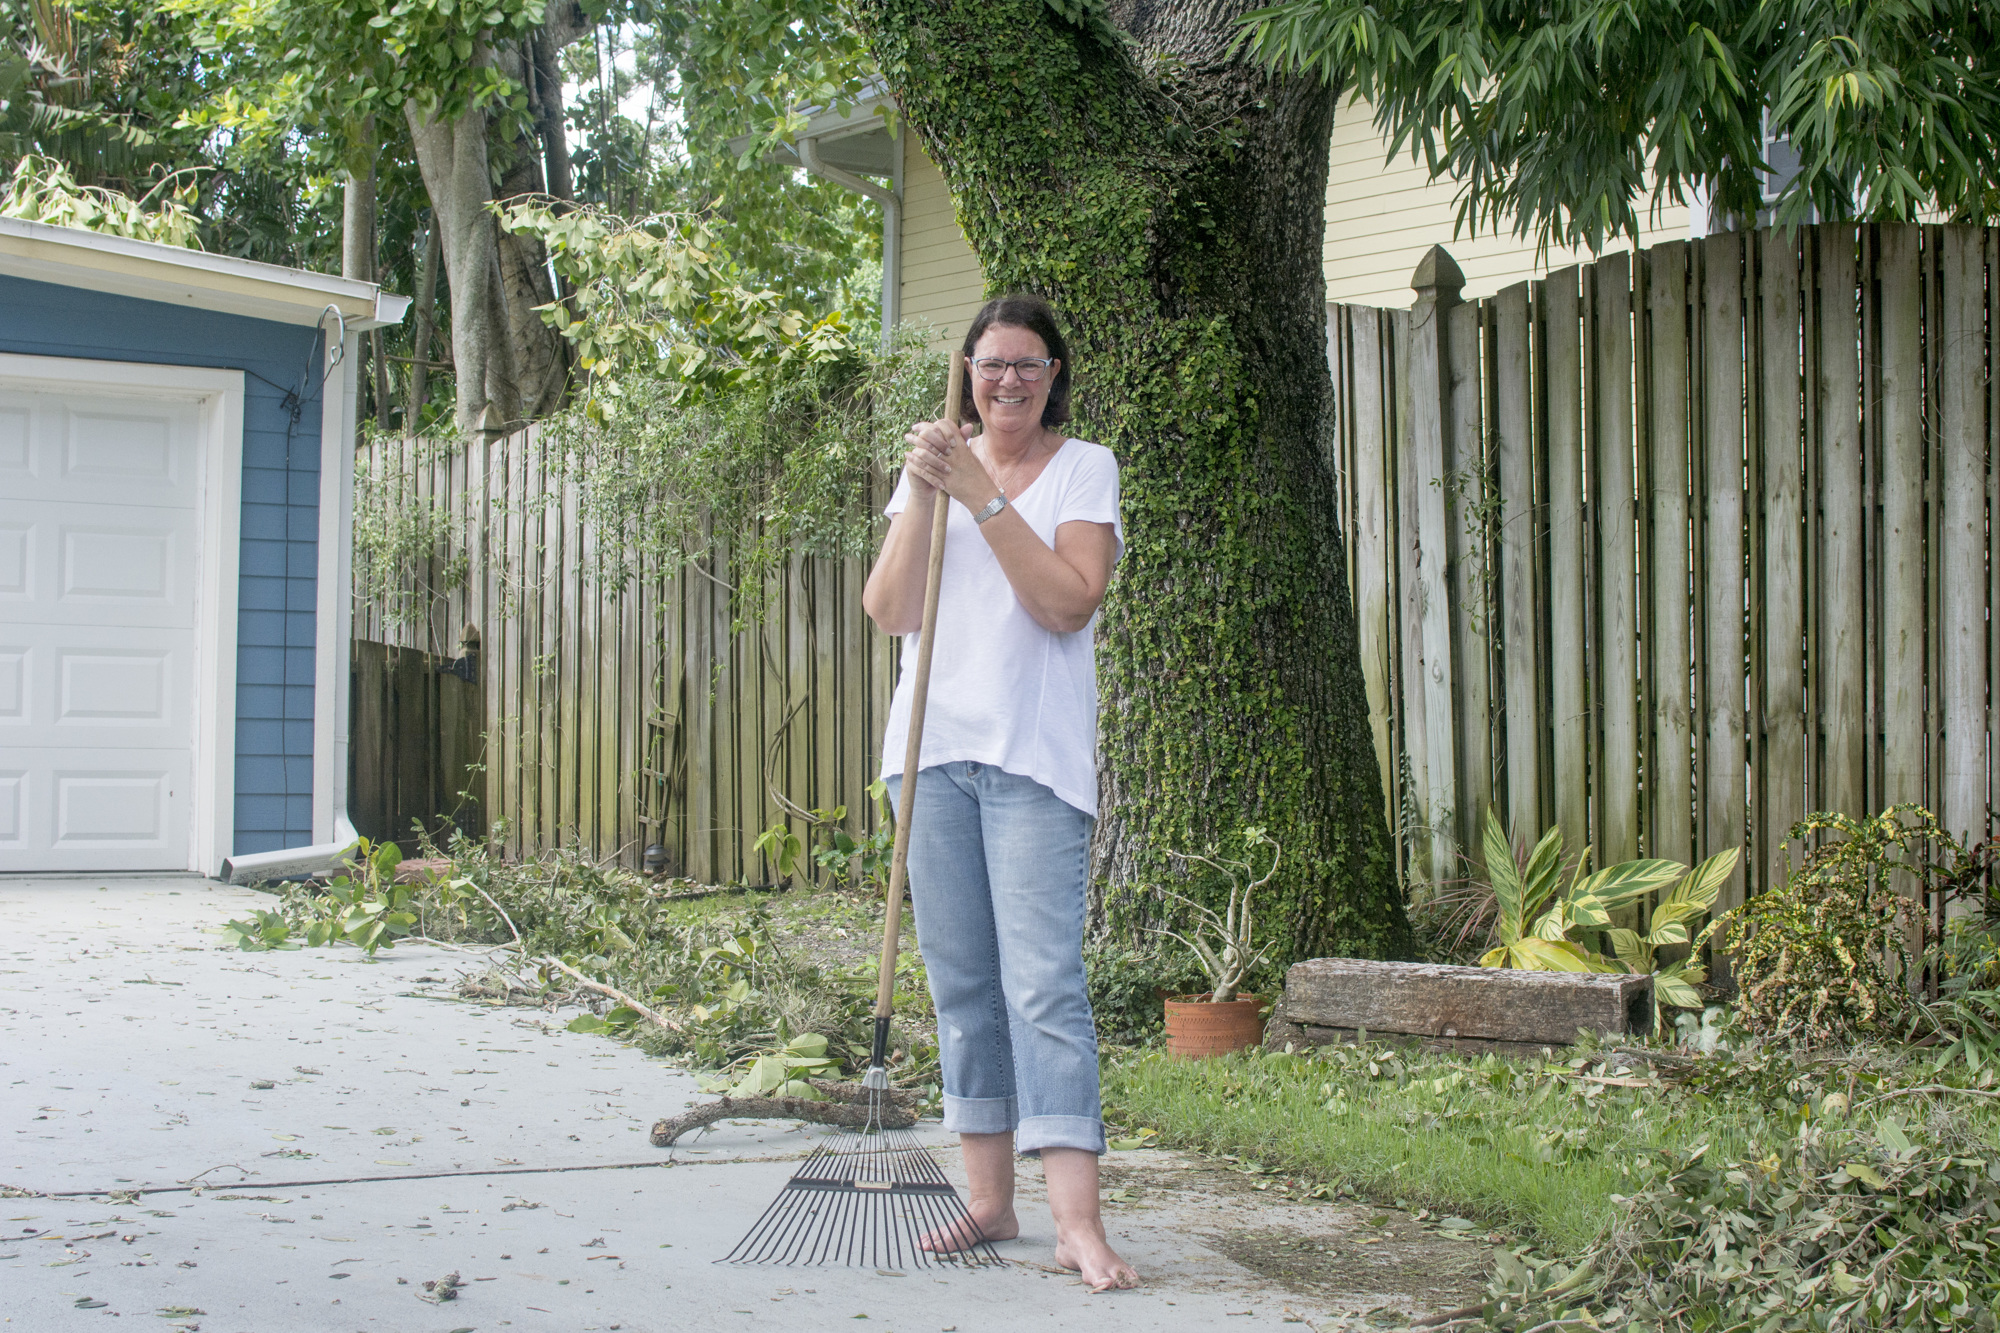 Lisa Dodds rakes debris in her yard after Hurricane Irma.